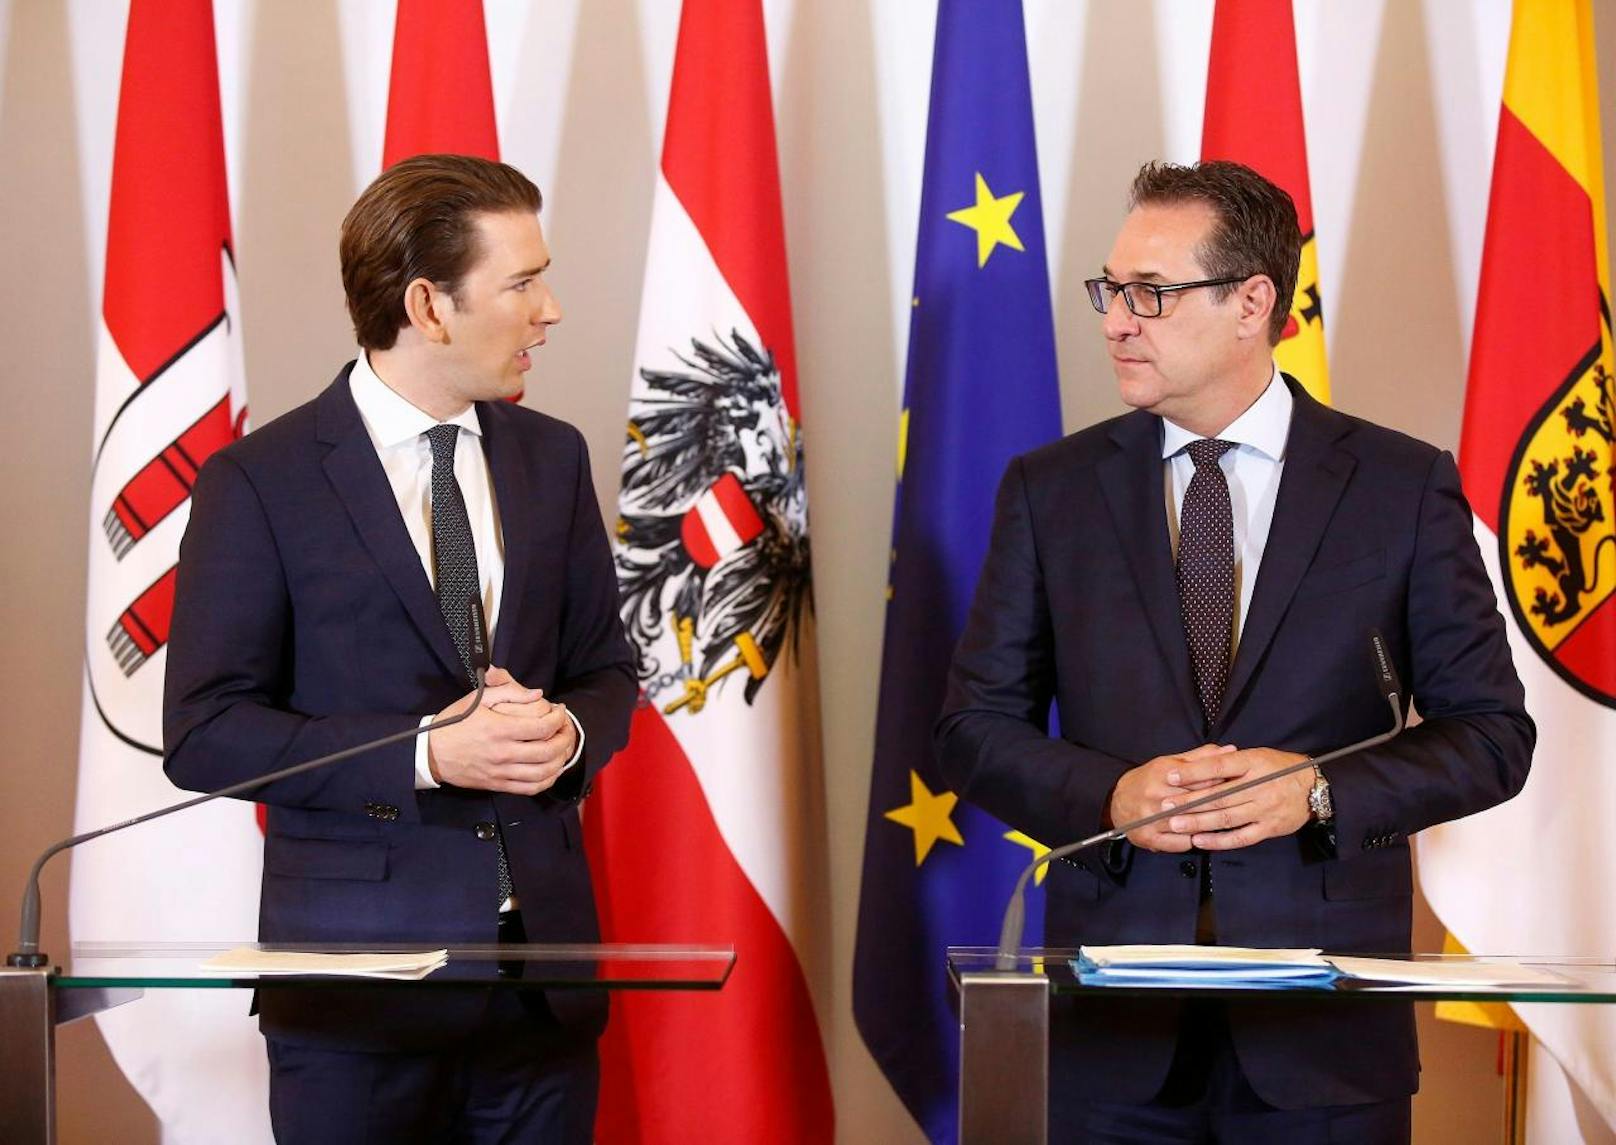 Bundeskanzler Sebastian Kurz (l.) und Vizekanzler Heinz-Christian Strache (r.) bei der Pressekonferenz am 24. April 2018.